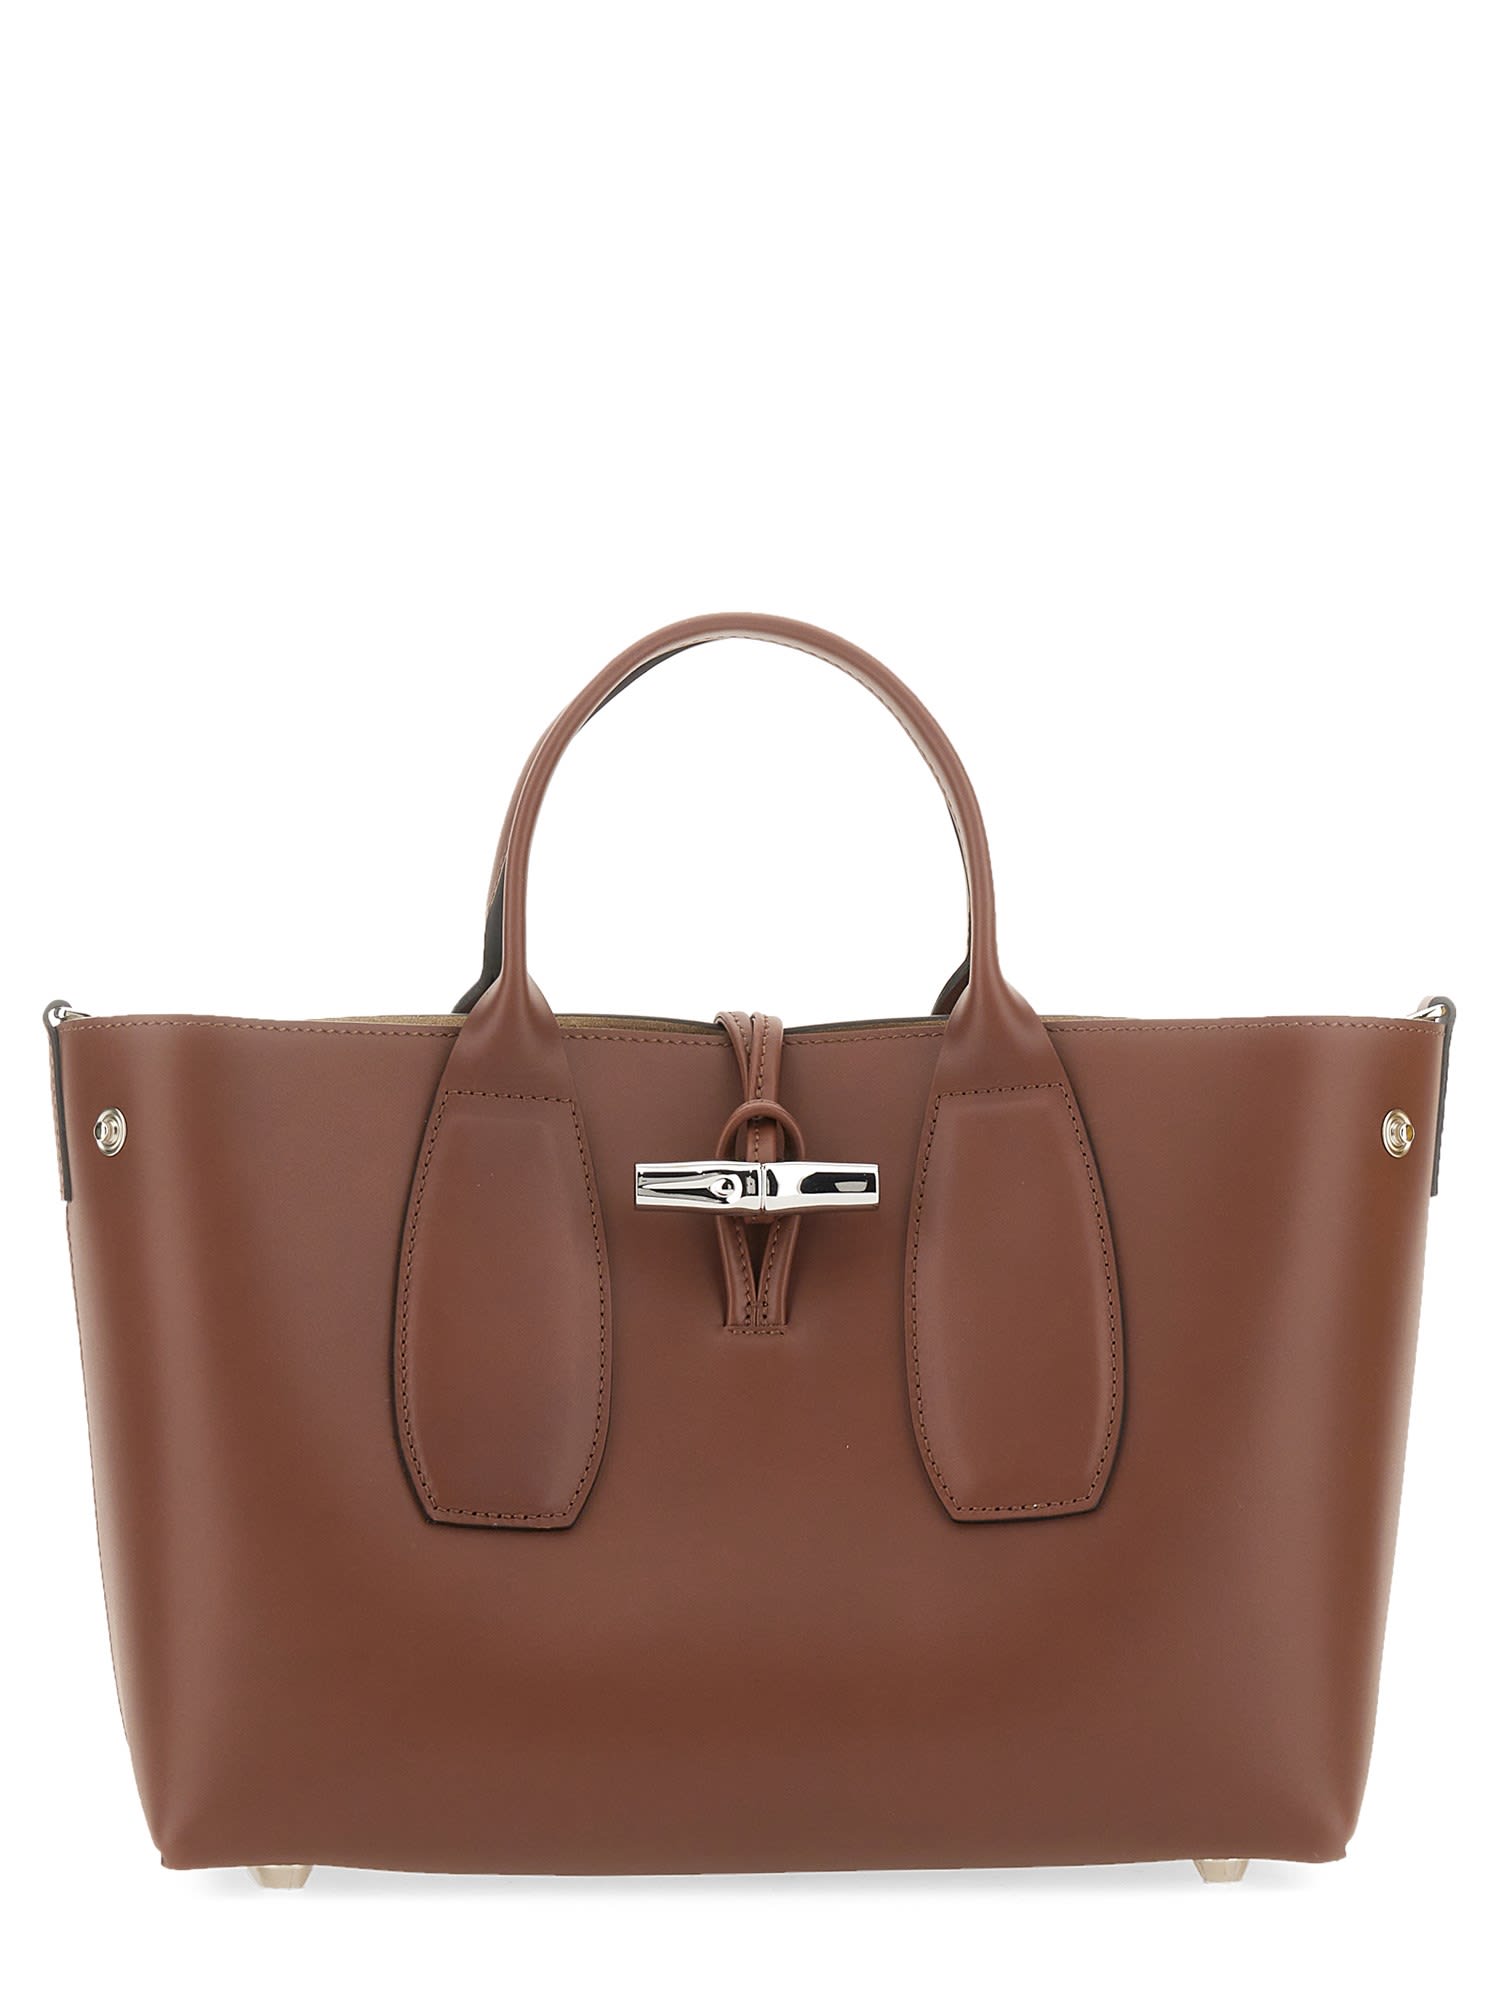 Longchamp Medium Roseau Bag